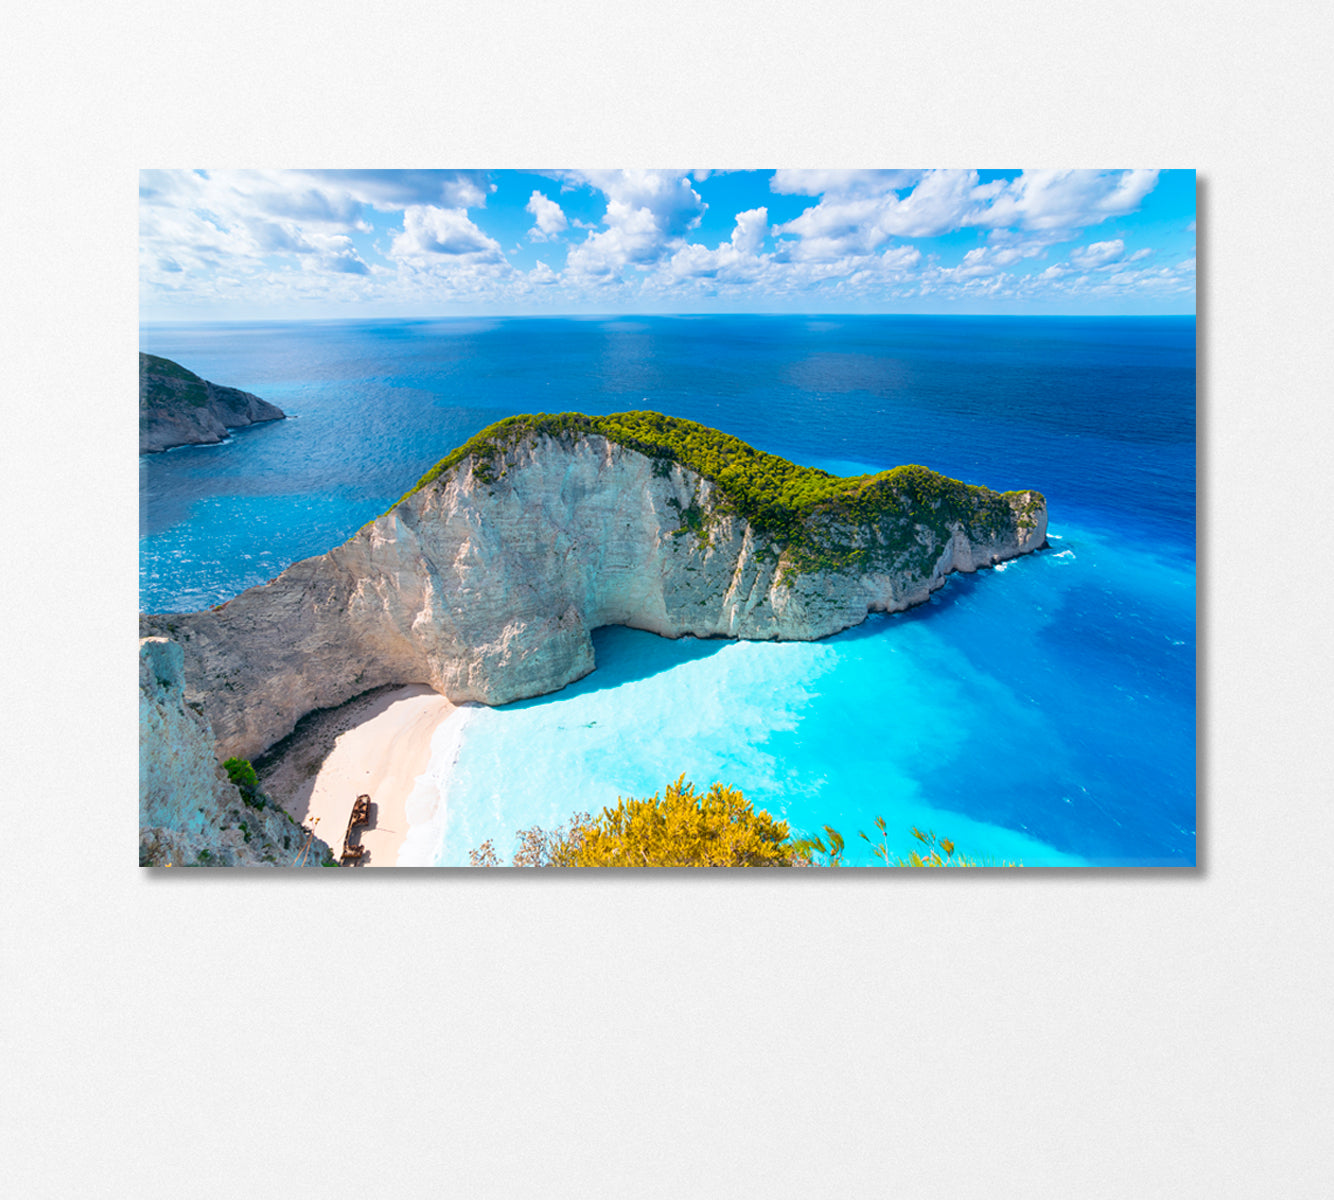 Zakynthos Island Greece Canvas Print-Canvas Print-CetArt-1 Panel-24x16 inches-CetArt